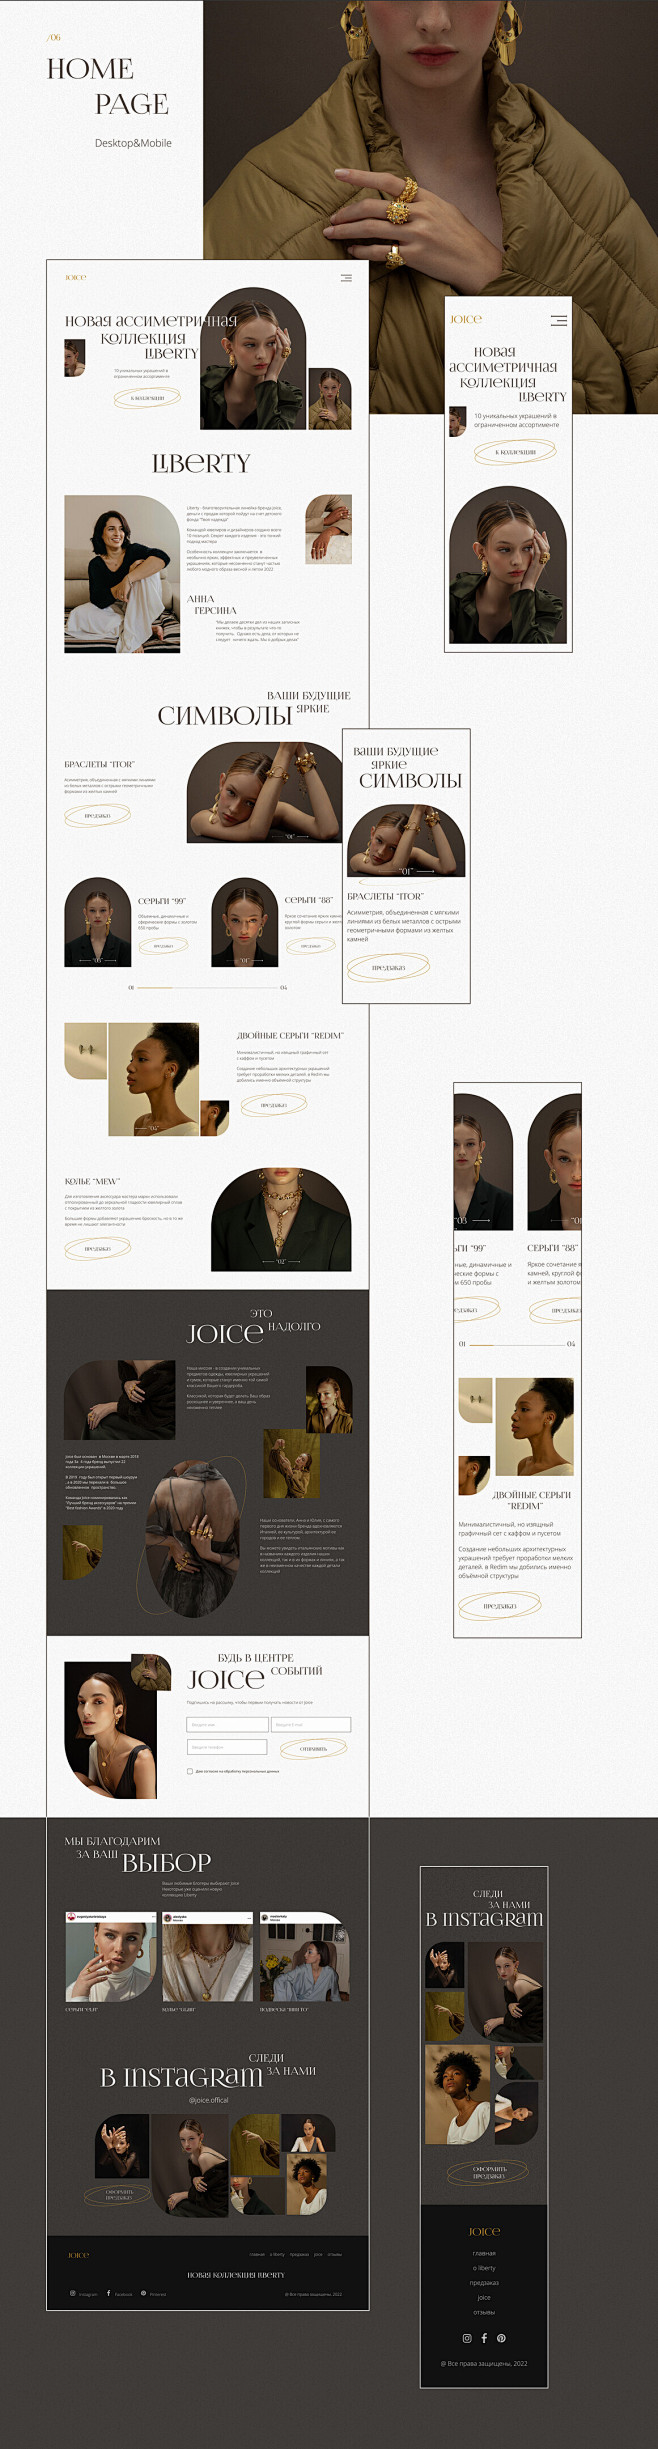 时尚珠宝在线商店用户界面网页设计-3.j...